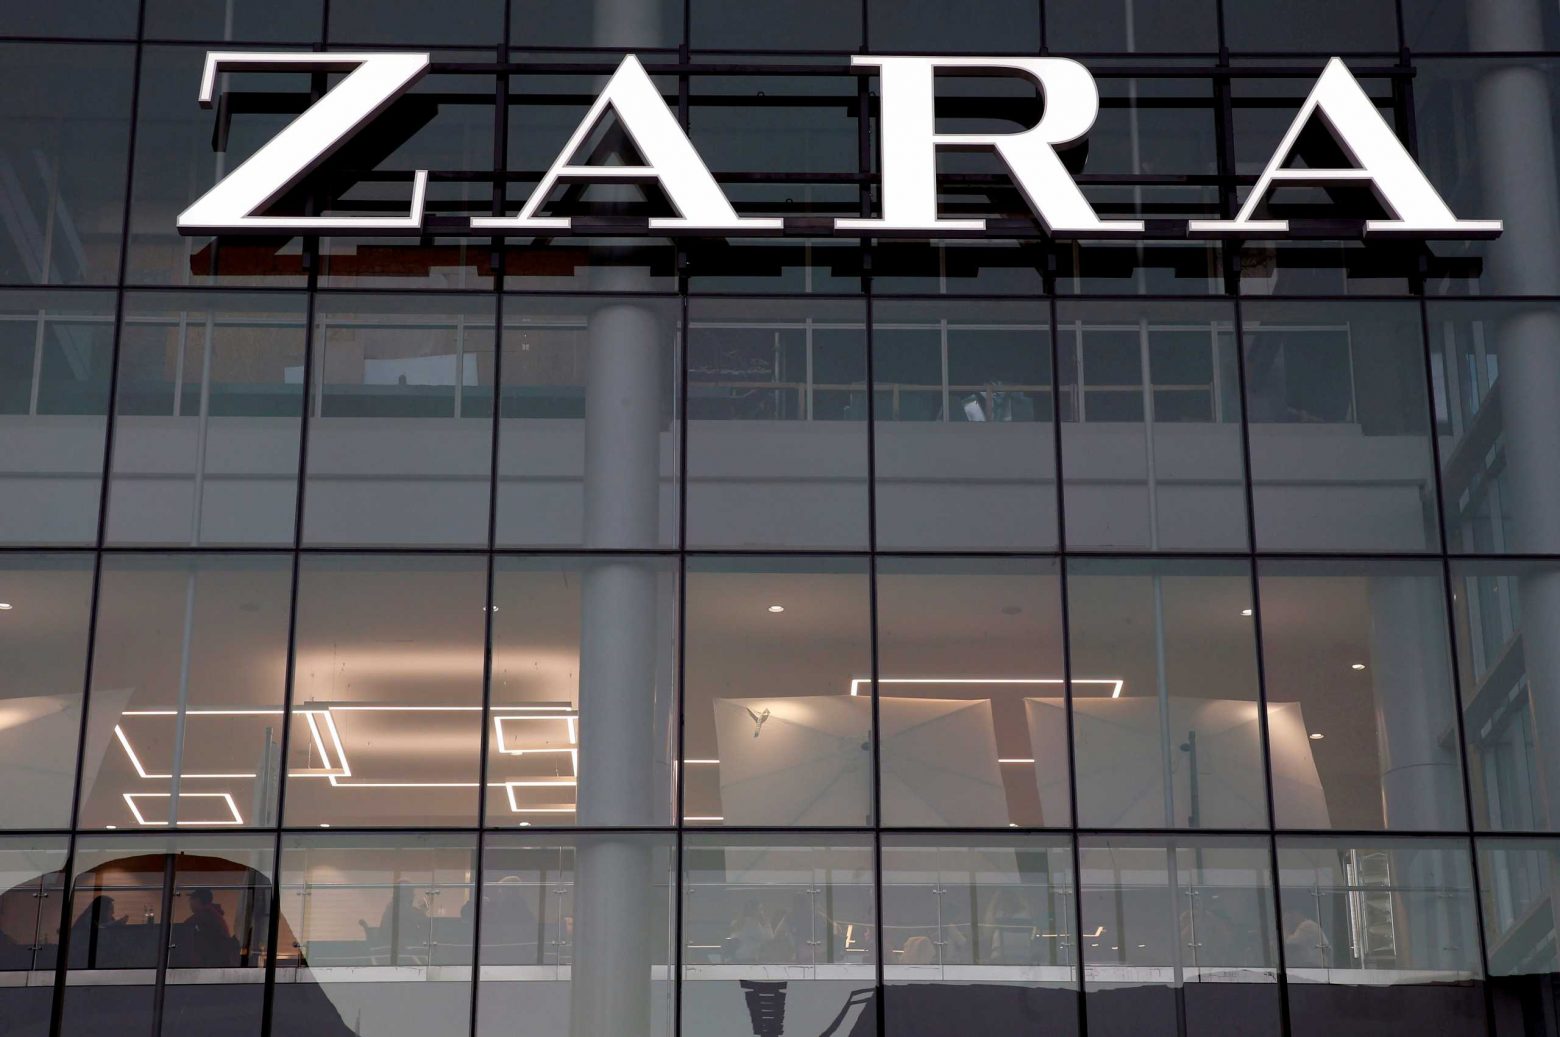 Πόλεμος στην Ουκρανία: Κλείνουν τα 502 καταστήματα Zara στην Ρωσία - Η εταιρεία διακόπτει τις online αγορές στην χώρα